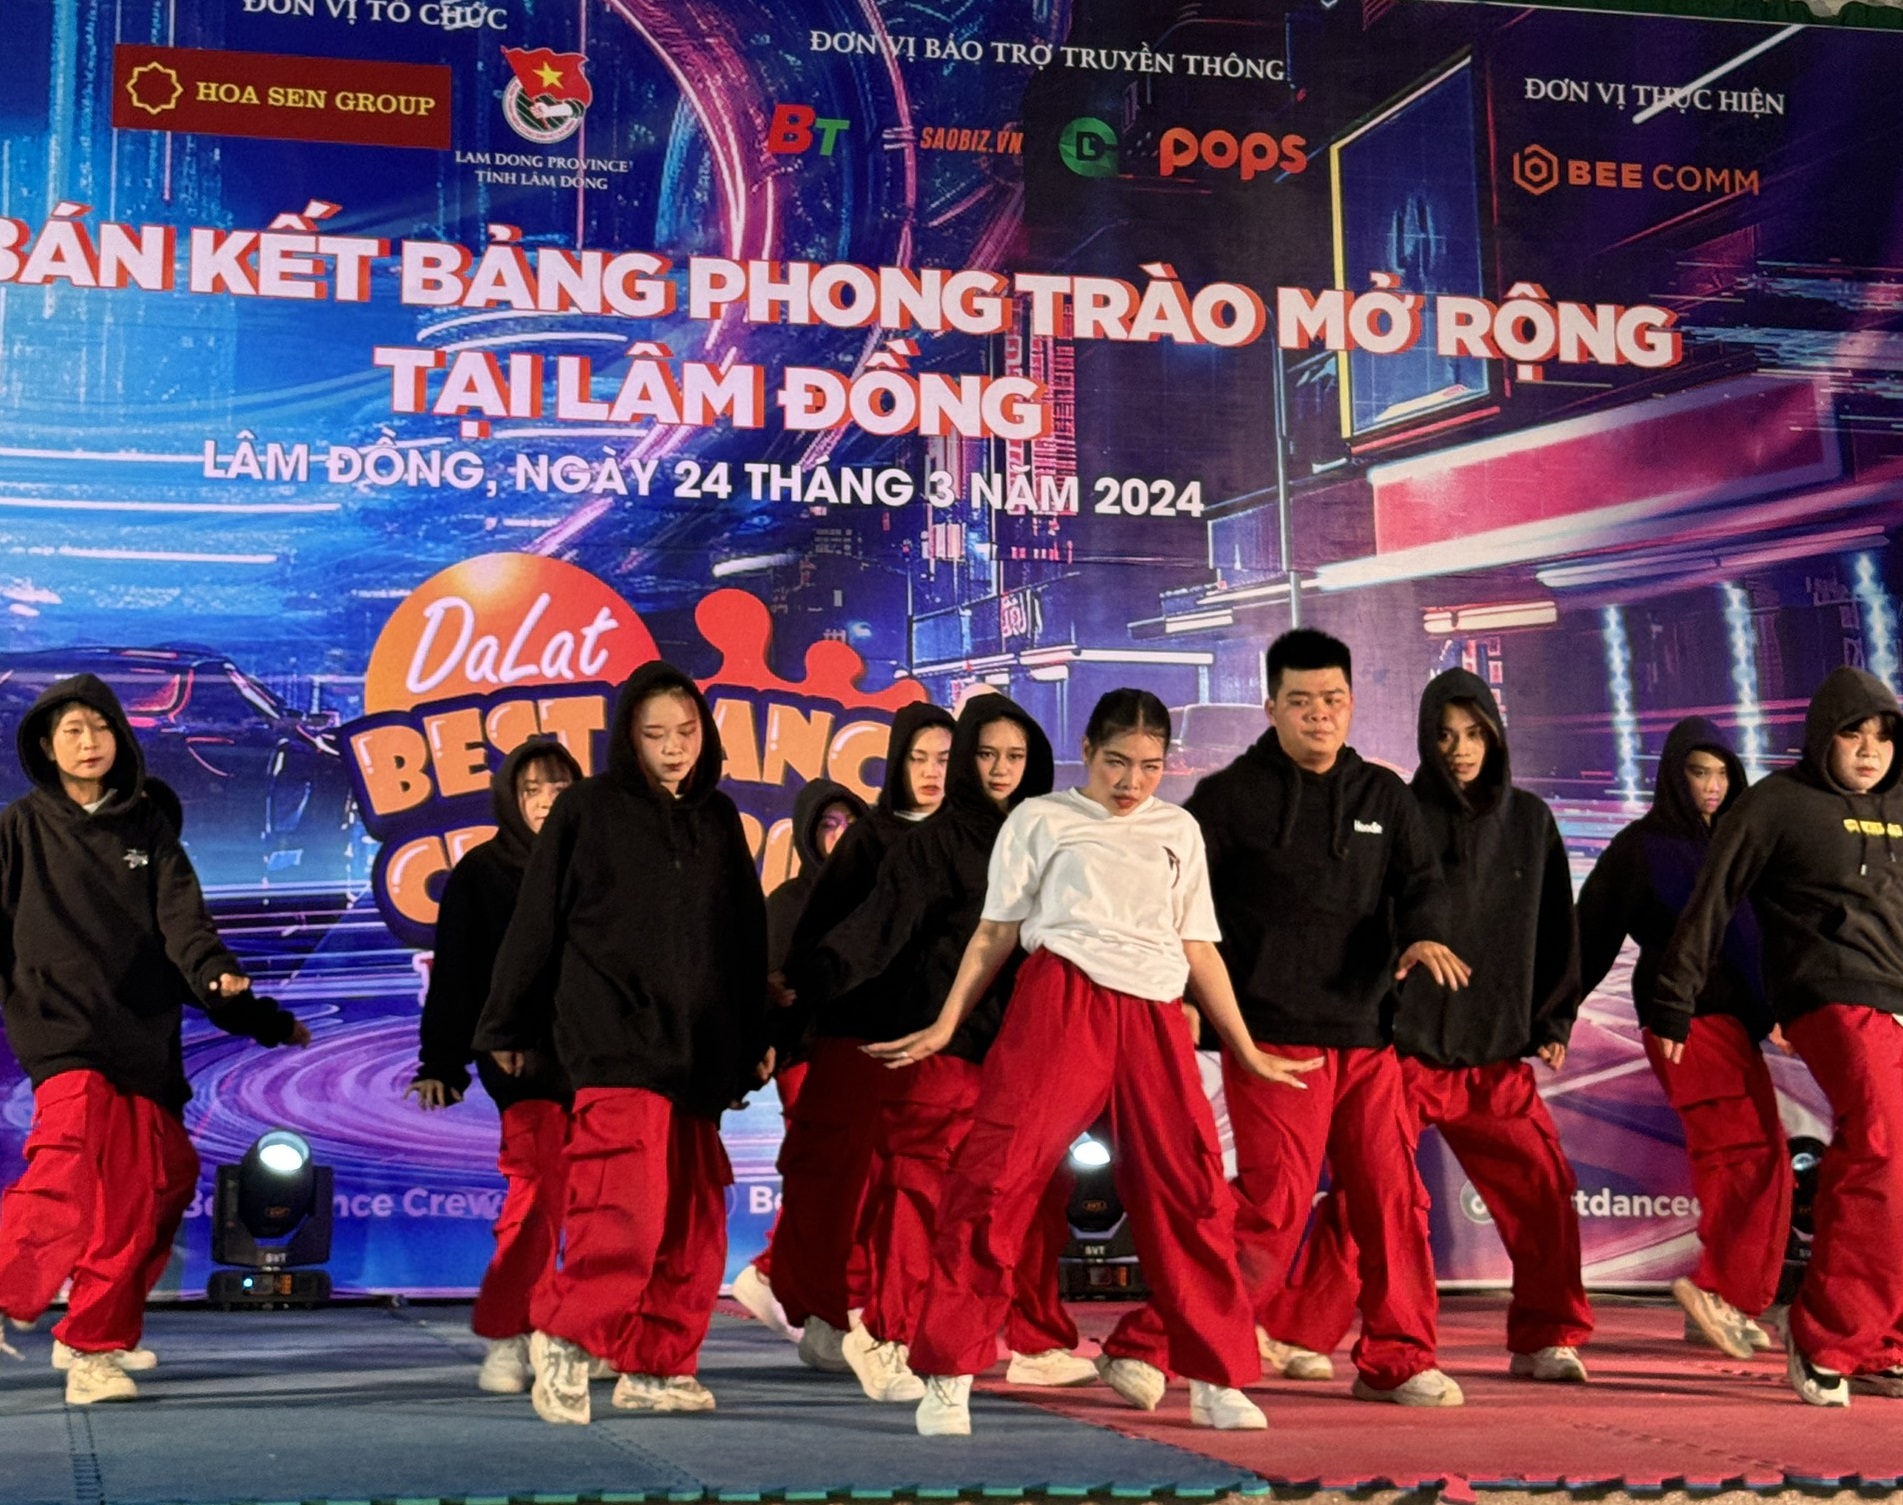 Lộ diện 14 nhóm nhảy phong trào tại Lâm Đồng lọt vào chung kết Dalat Best Dance Crew 2024 - Hoa Sen Home International Cup - 1